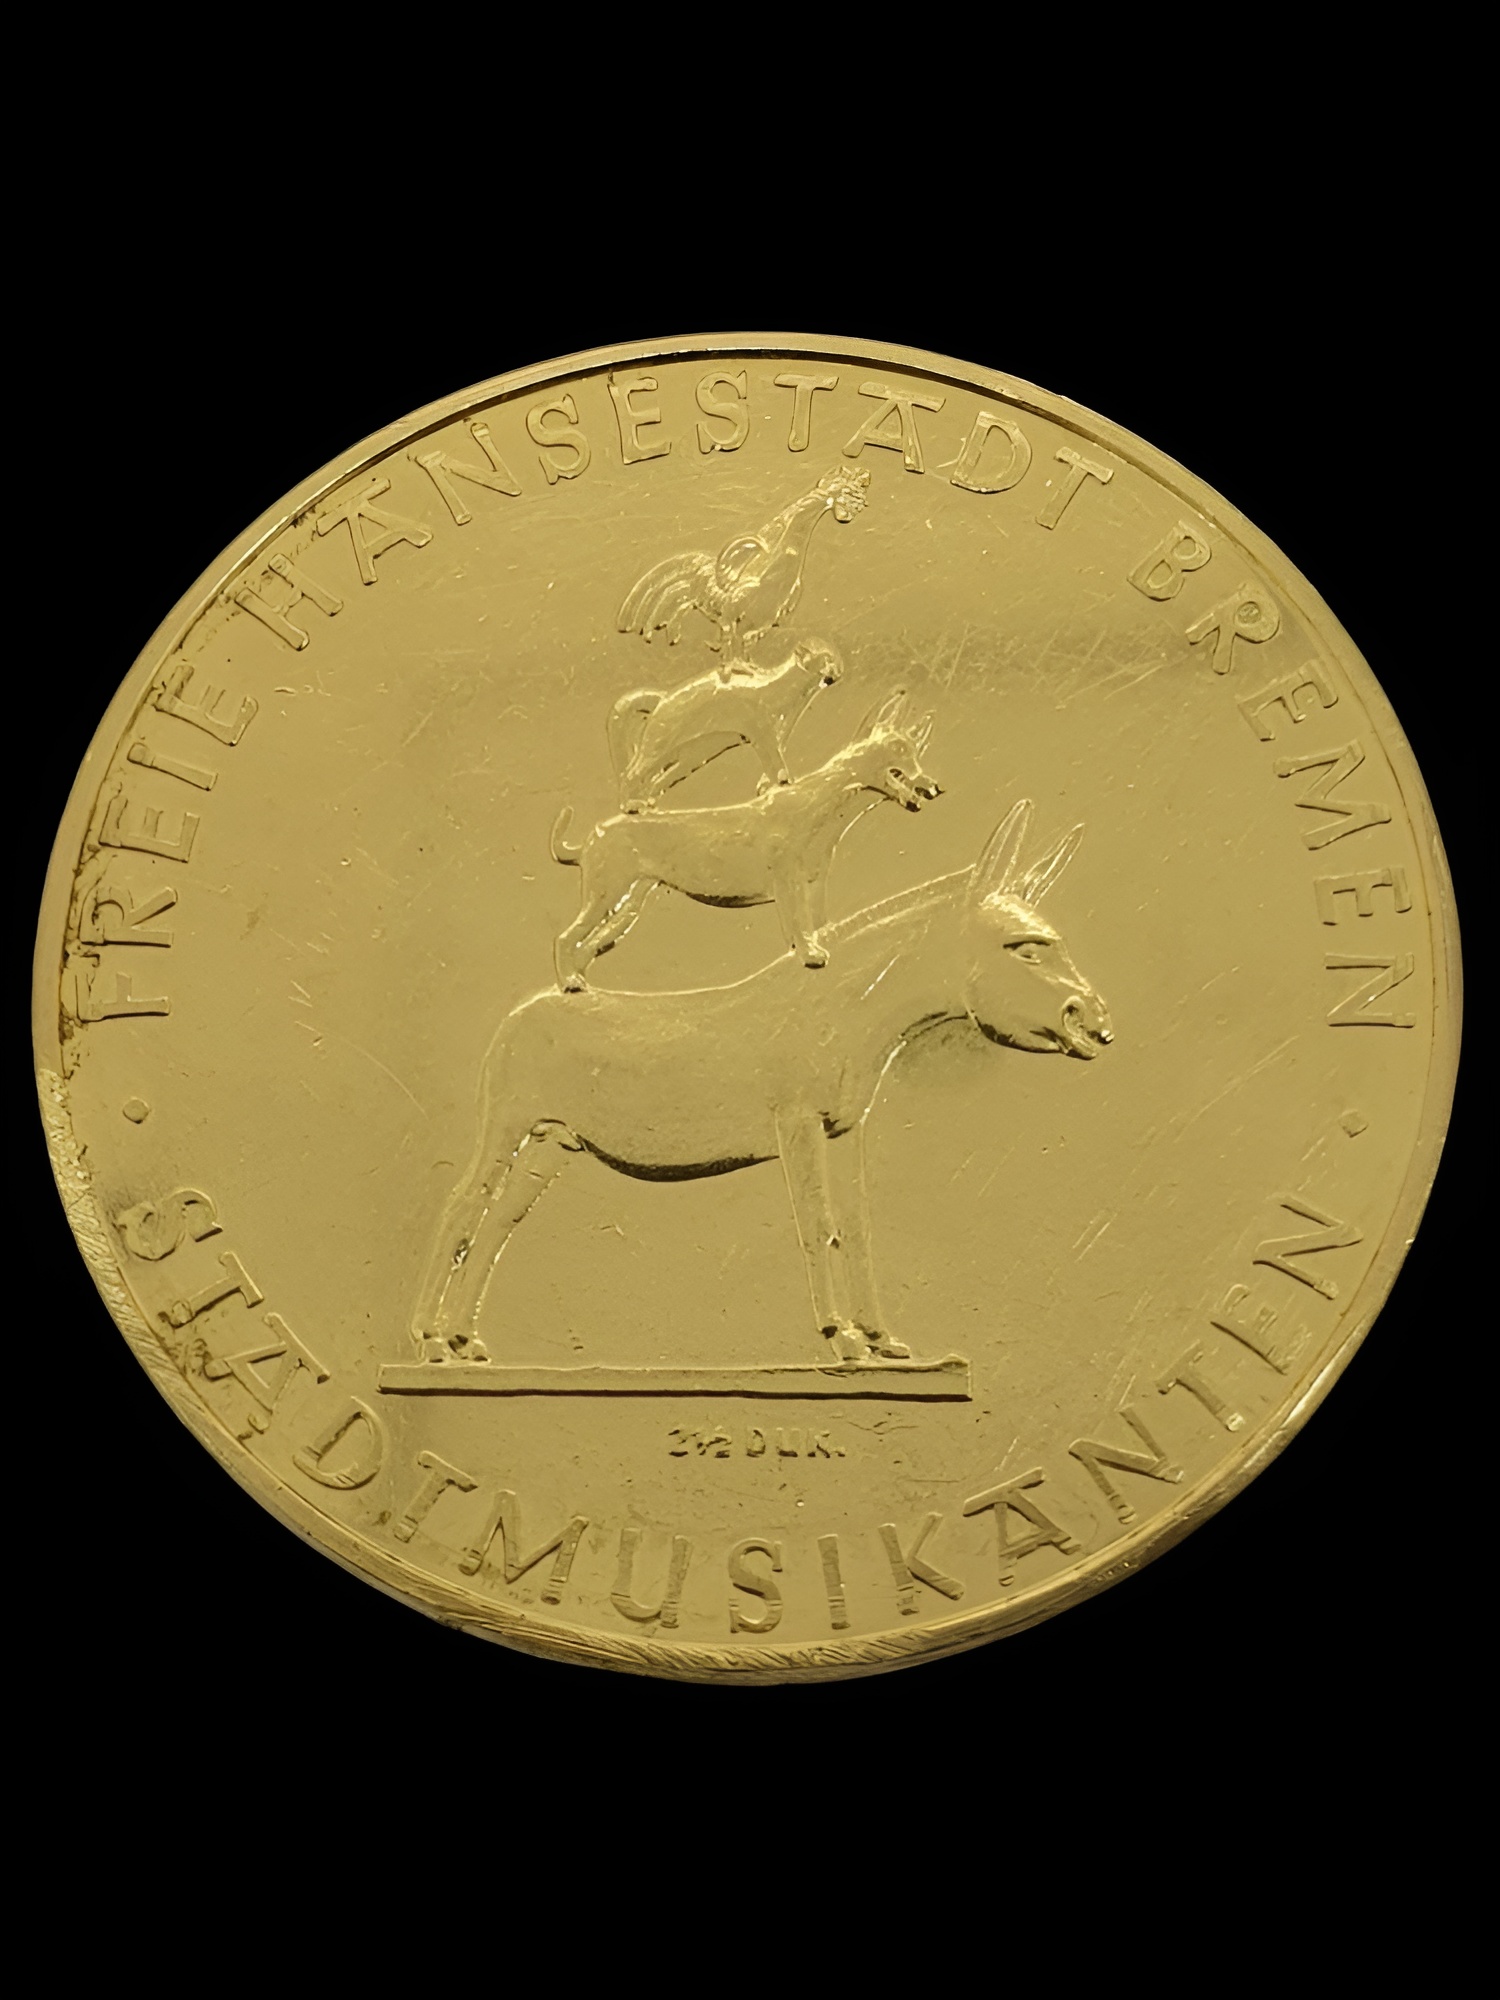 1965 Freie Hansestadt Bremen 2 1/2 Duk Gold Coin